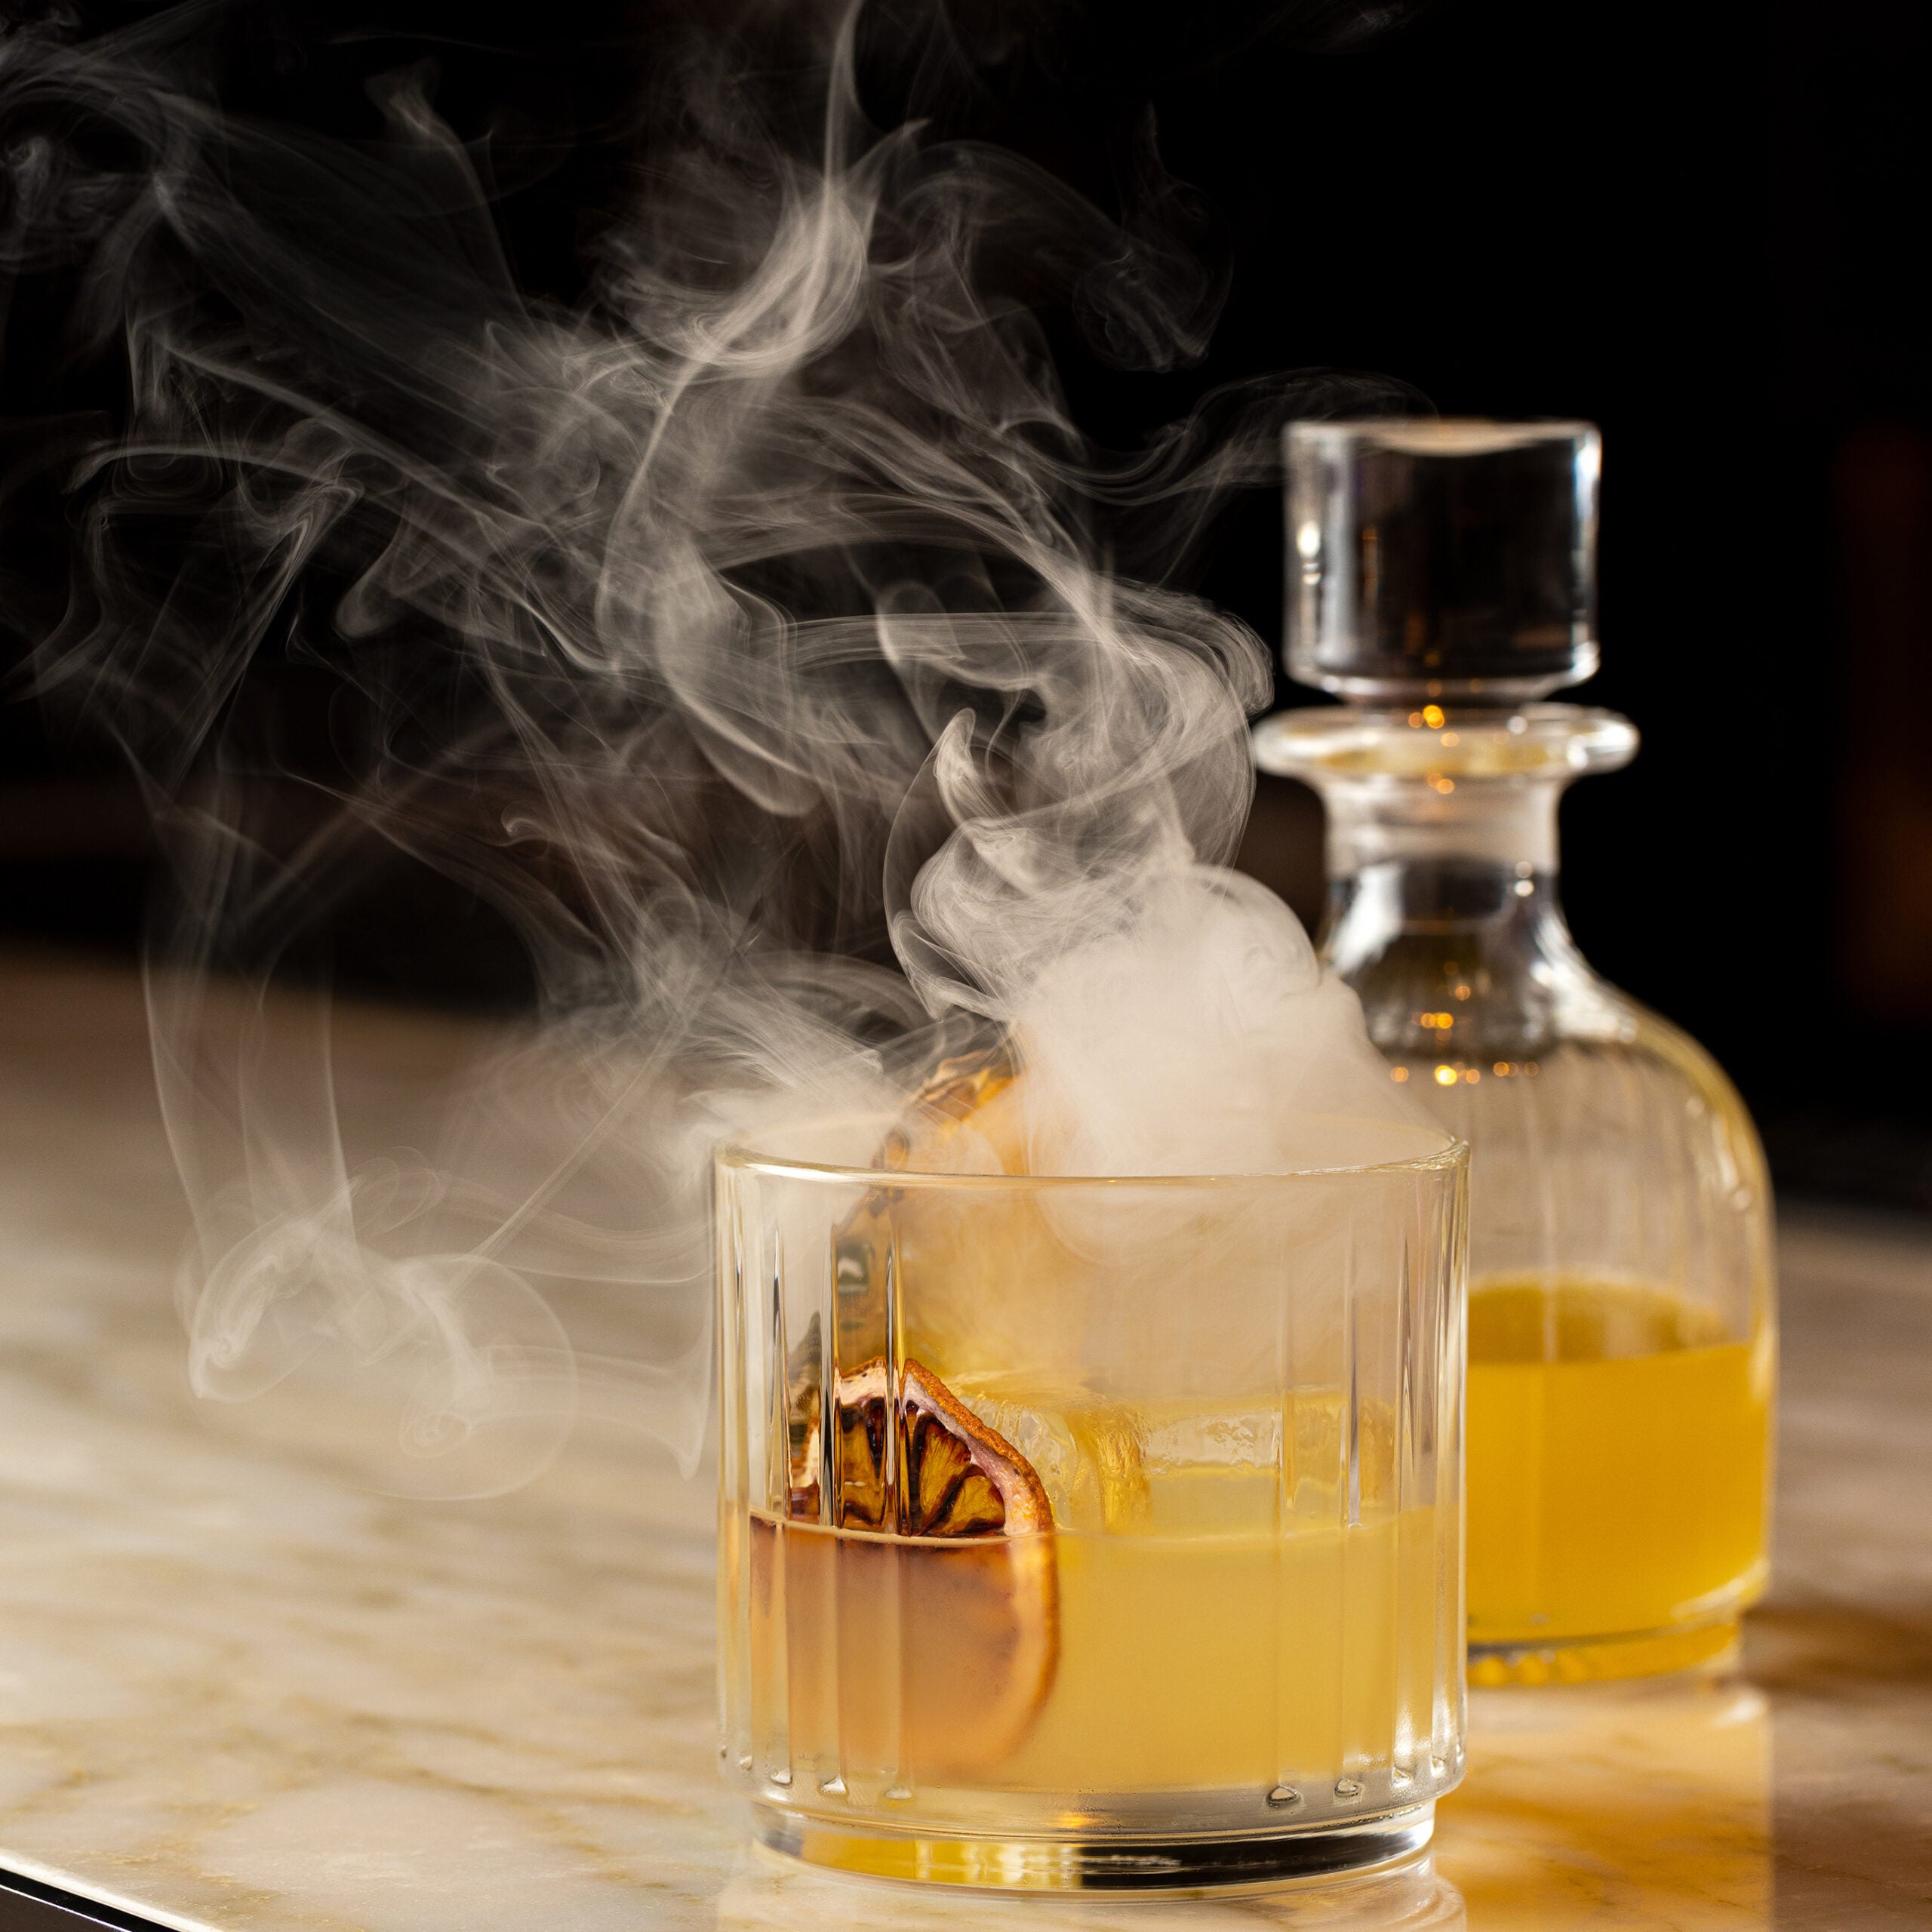 A smoky Wildwood Cocktail at Medium Rare Lounge.